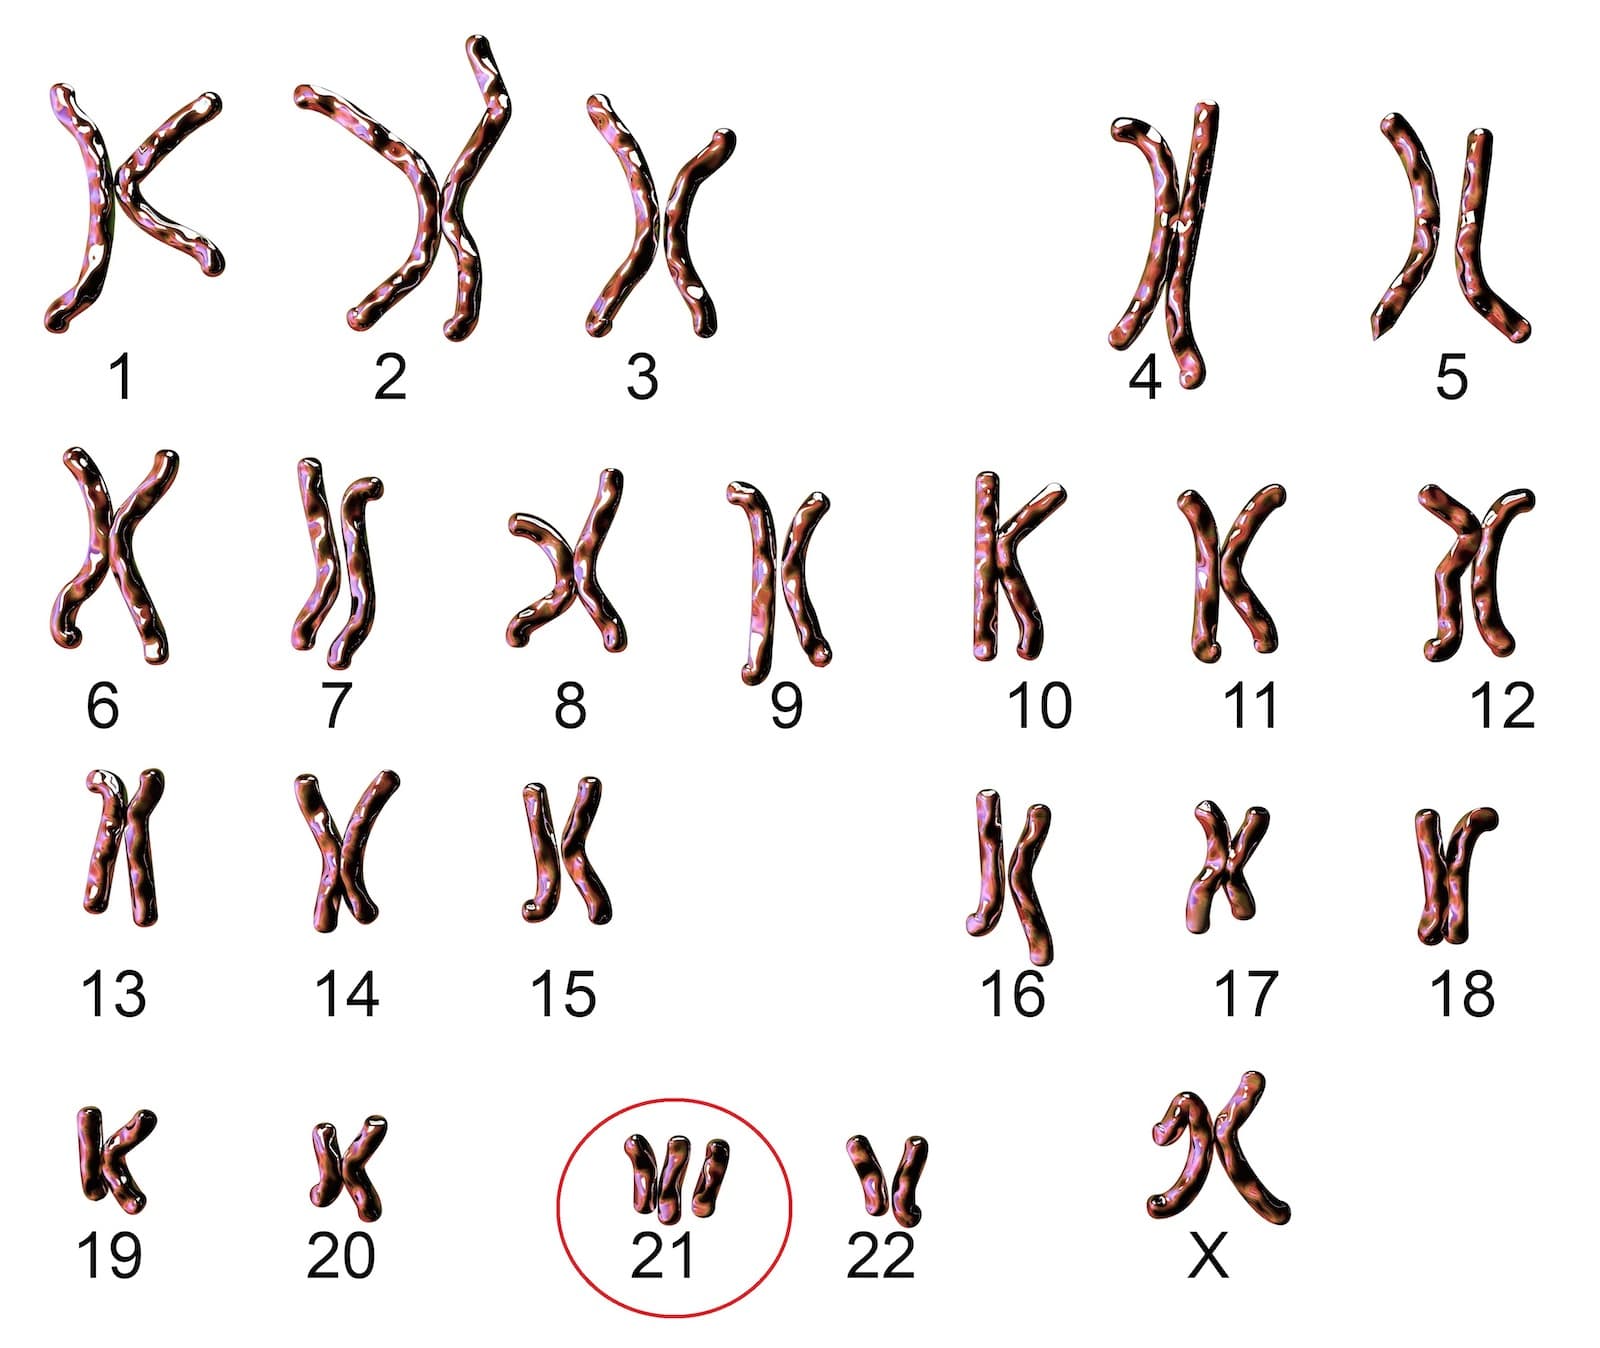 Down-szndróma kromoszómák